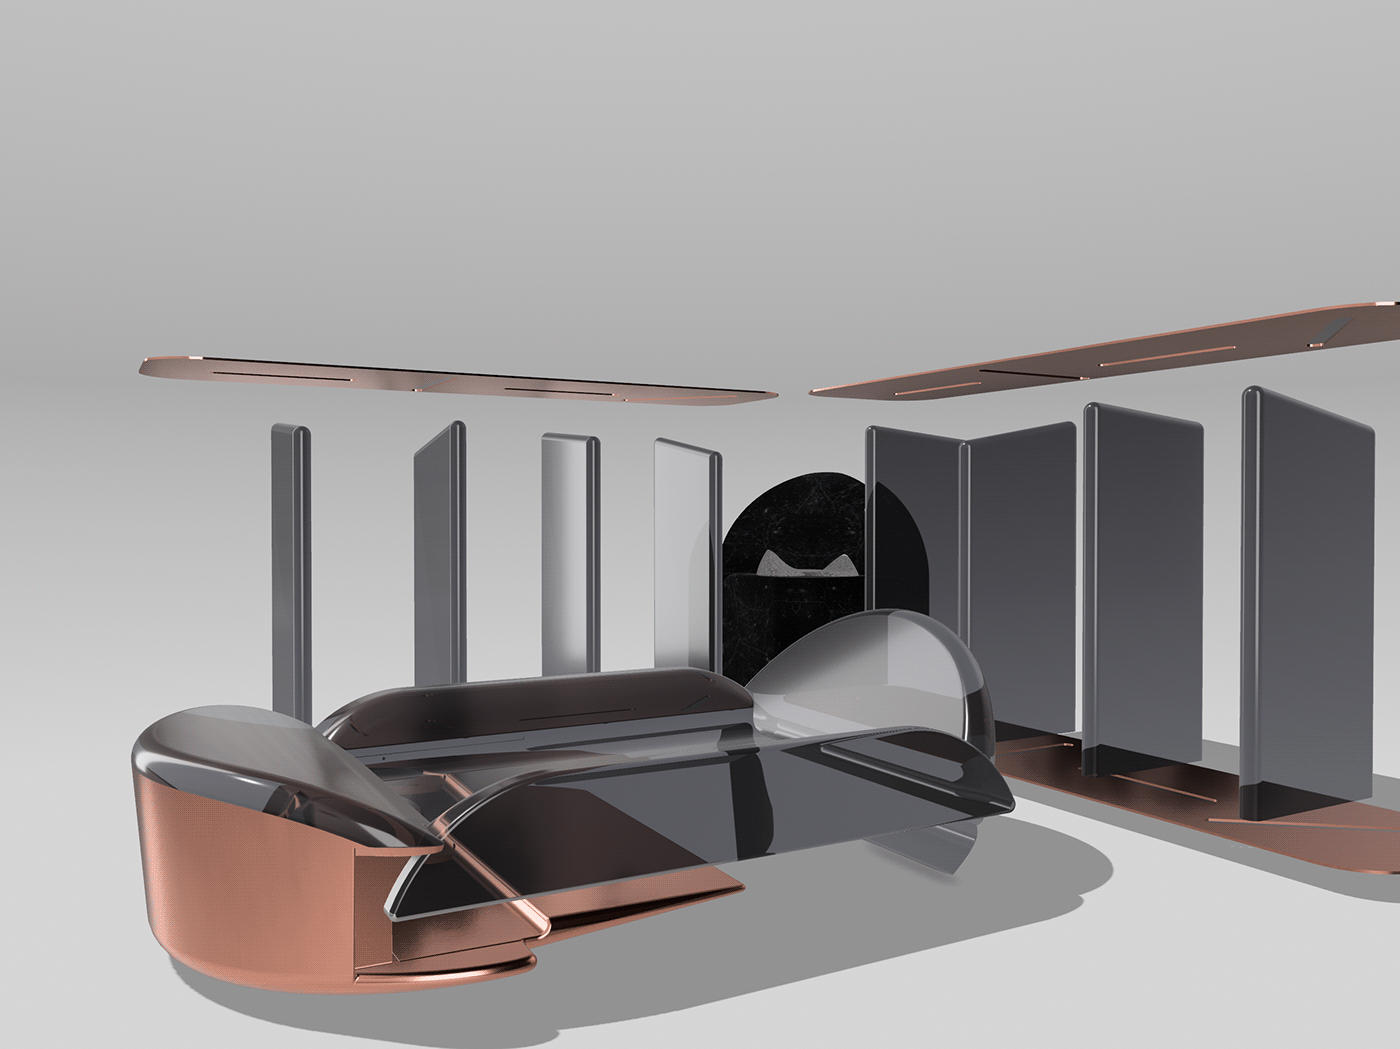 3D architecture bathroom furniture Interior interior design  science electromagnetic futuristic superconductor